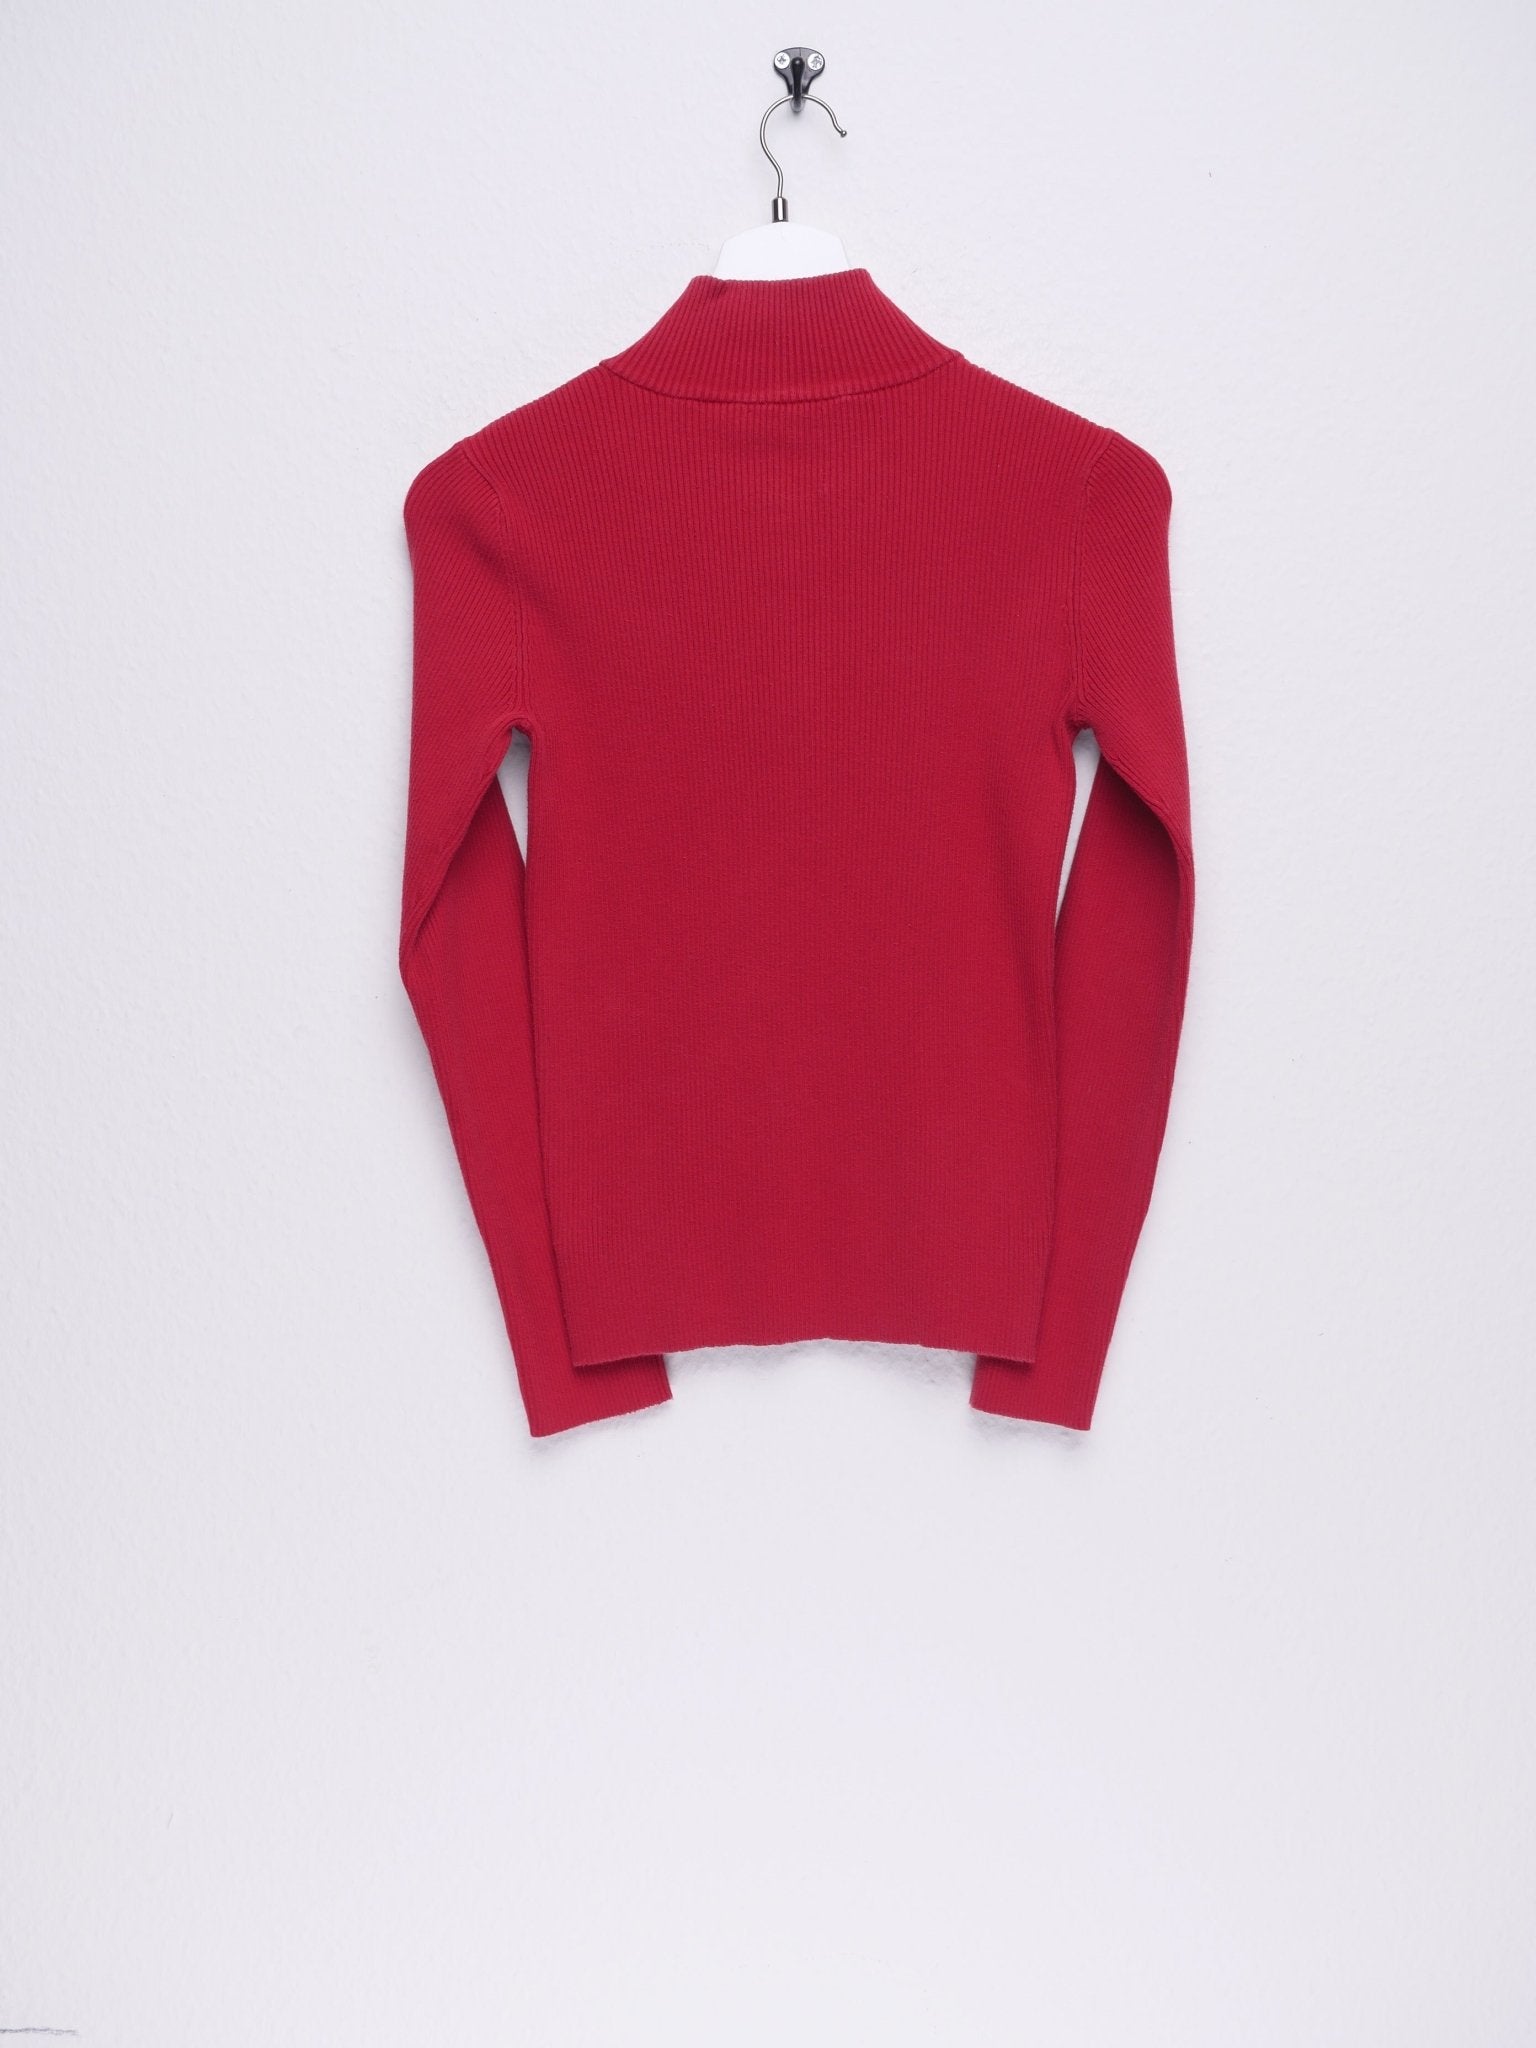 Ralph Lauren embroidered Logo red Half Zip Sweater - Peeces